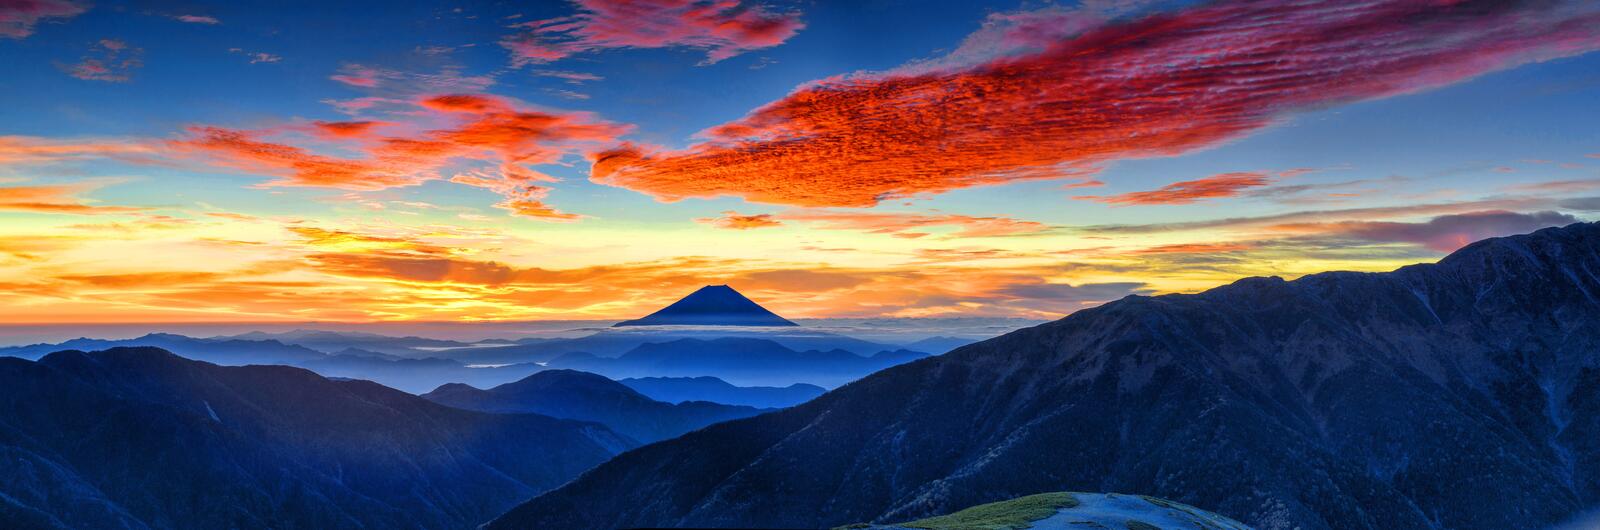 Обои Гора Фудзи Горы Природа на рабочий стол